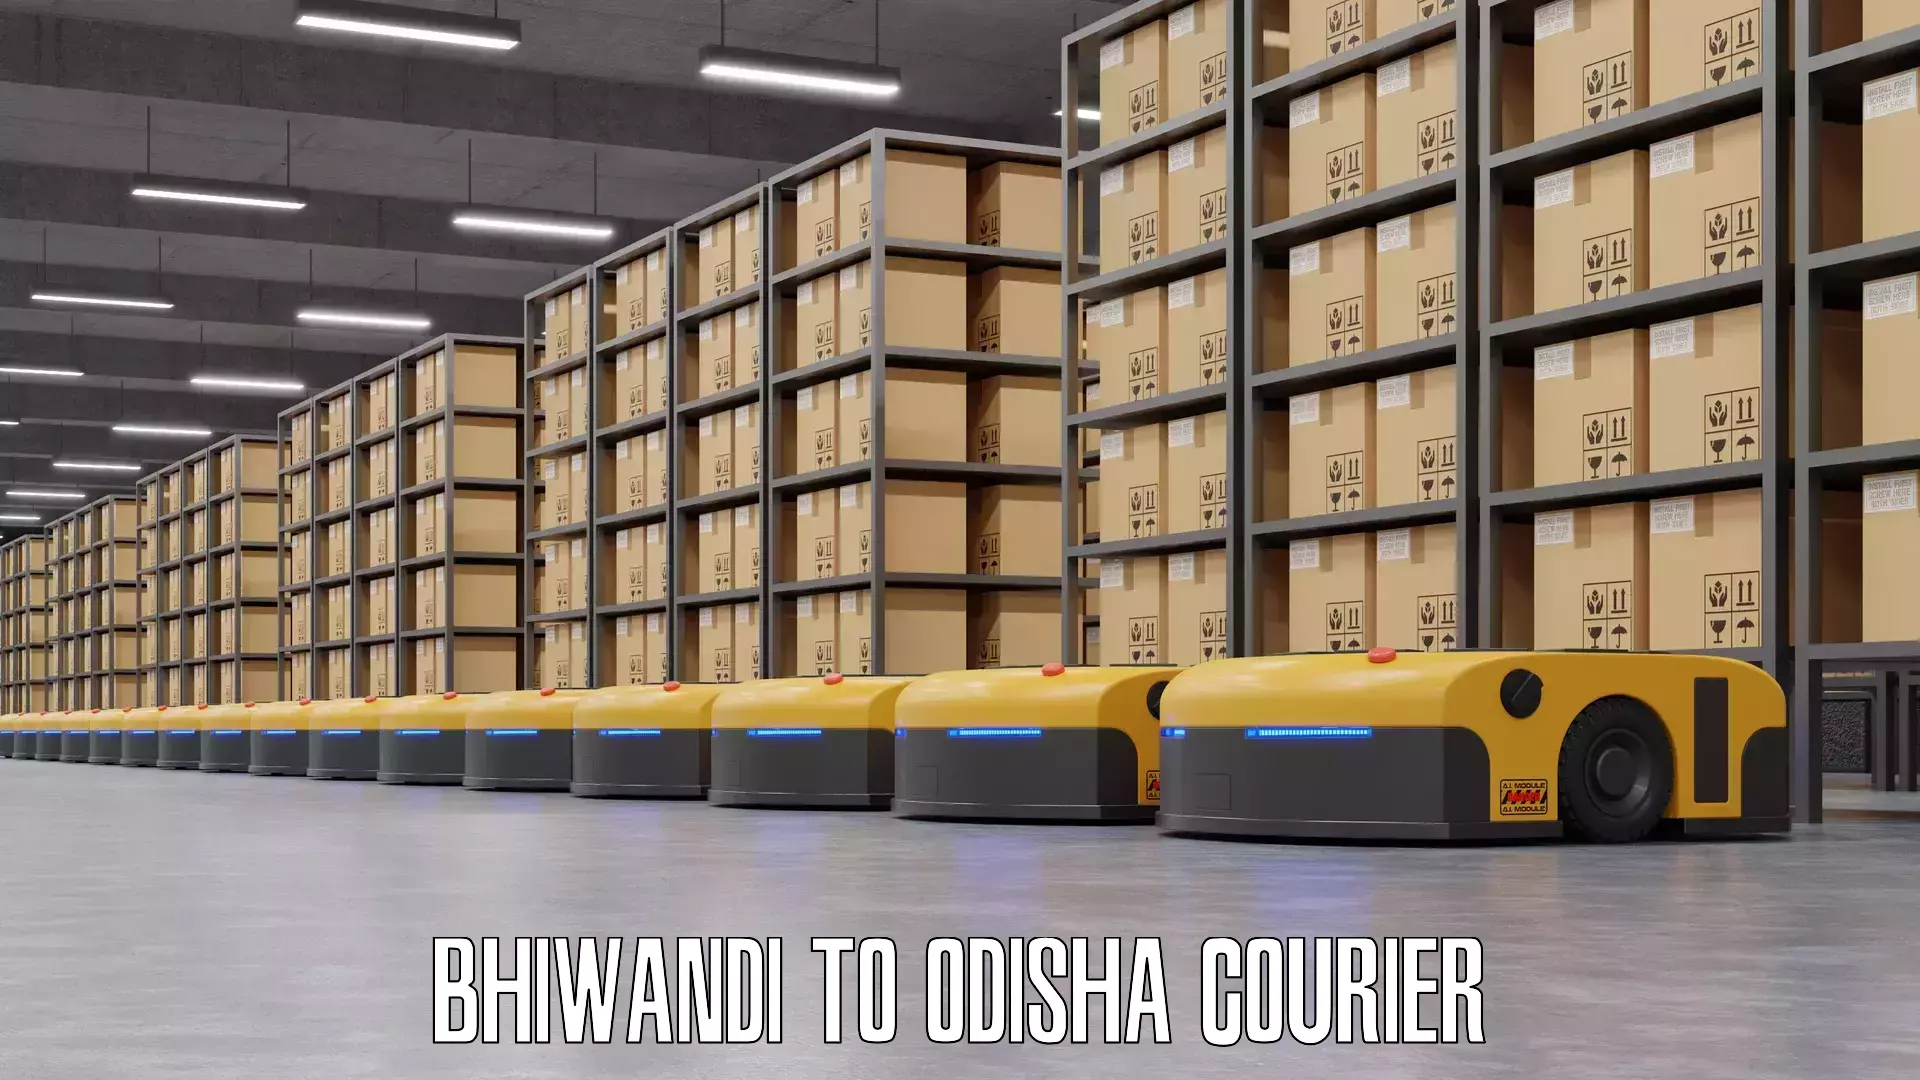 Luggage forwarding service Bhiwandi to Odisha